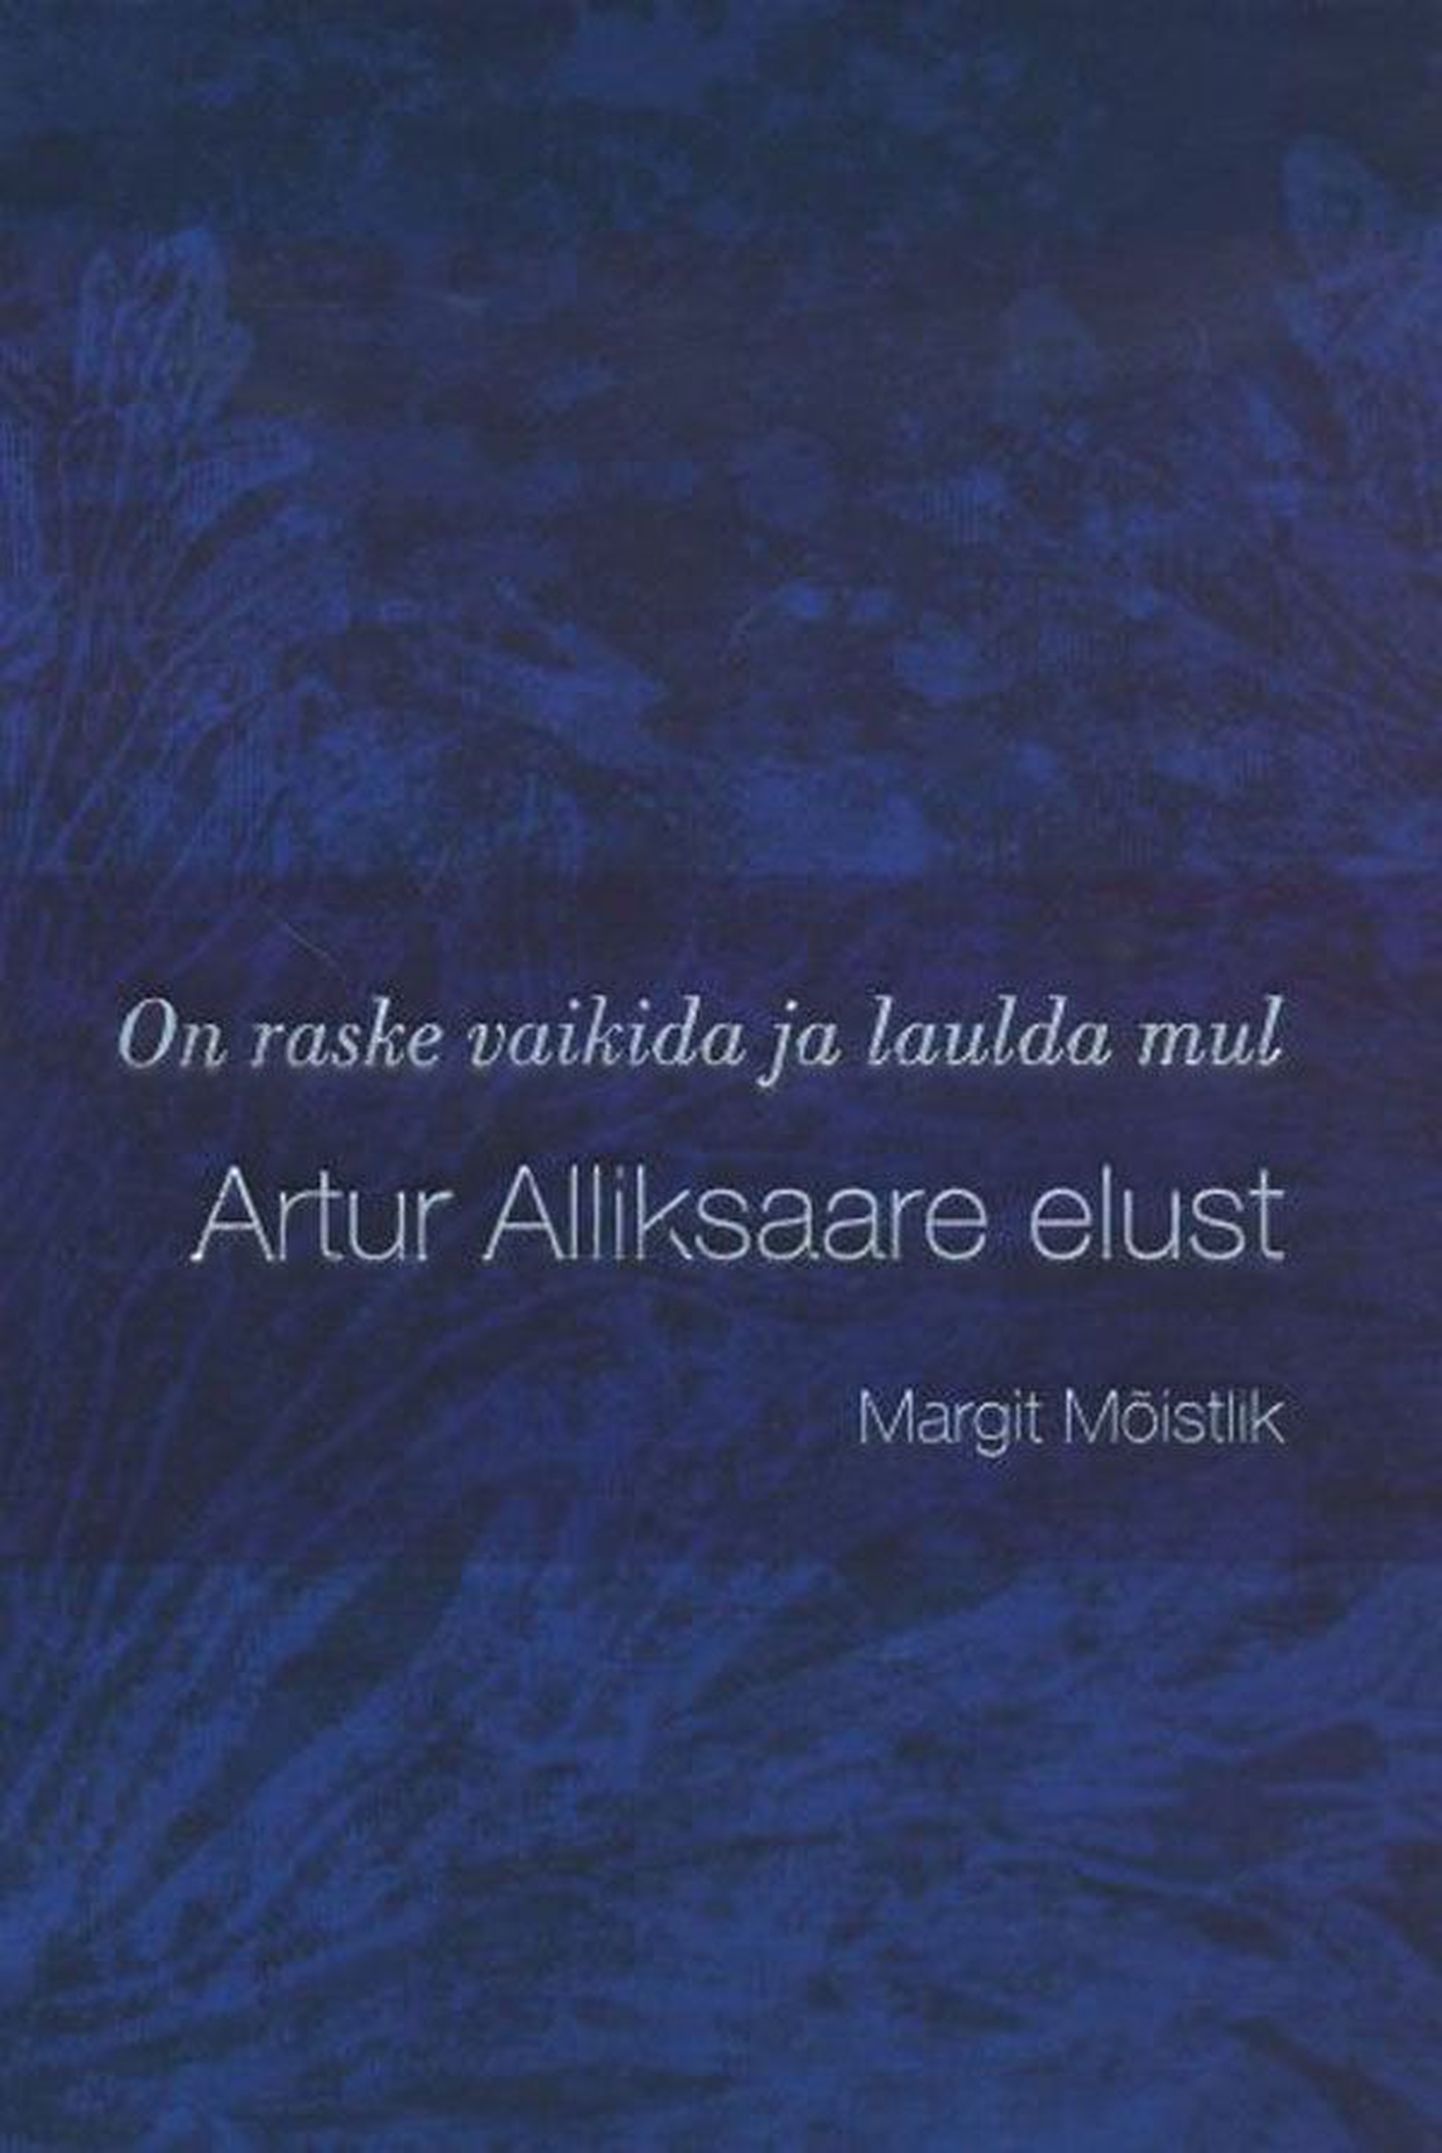 Raamat

Margit Mõistlik
«On raske vaikida ja laulda mul. Artur 
Alliksaare elust»
Menu, 2011
208 lk